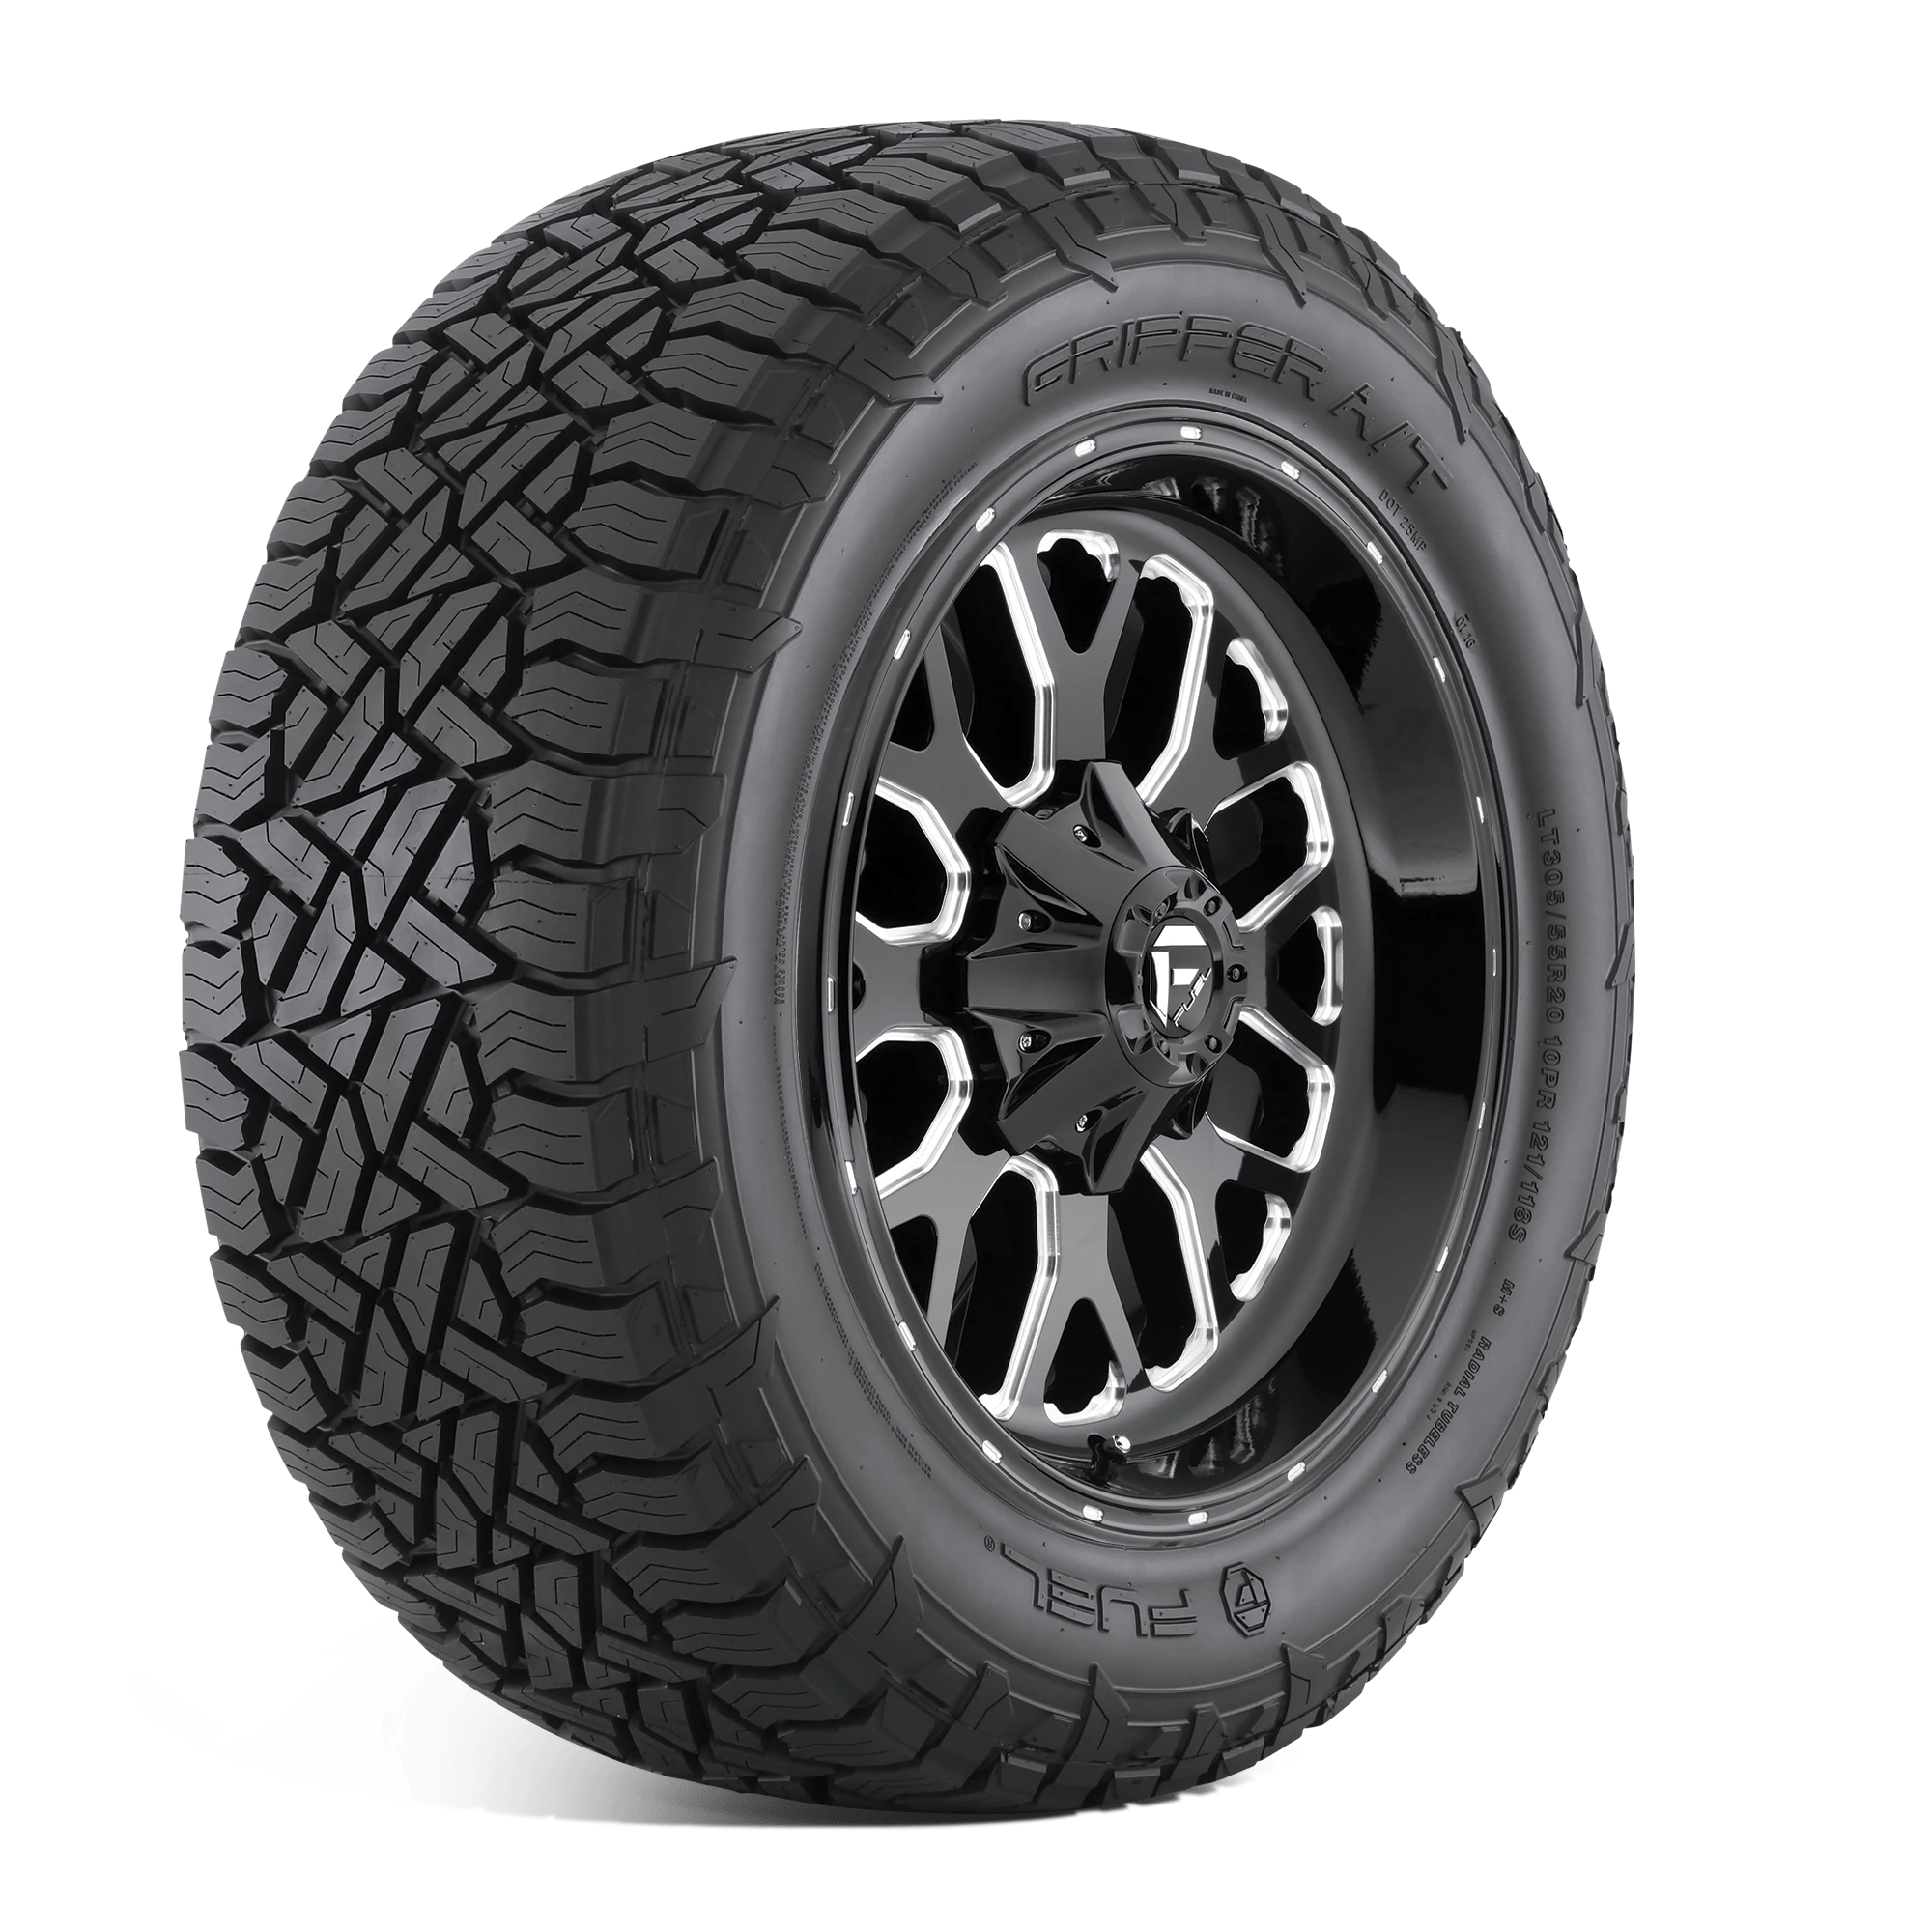 FUEL GRIPPER AT LT285/65R20 (34.6X11.2R 20) Tires